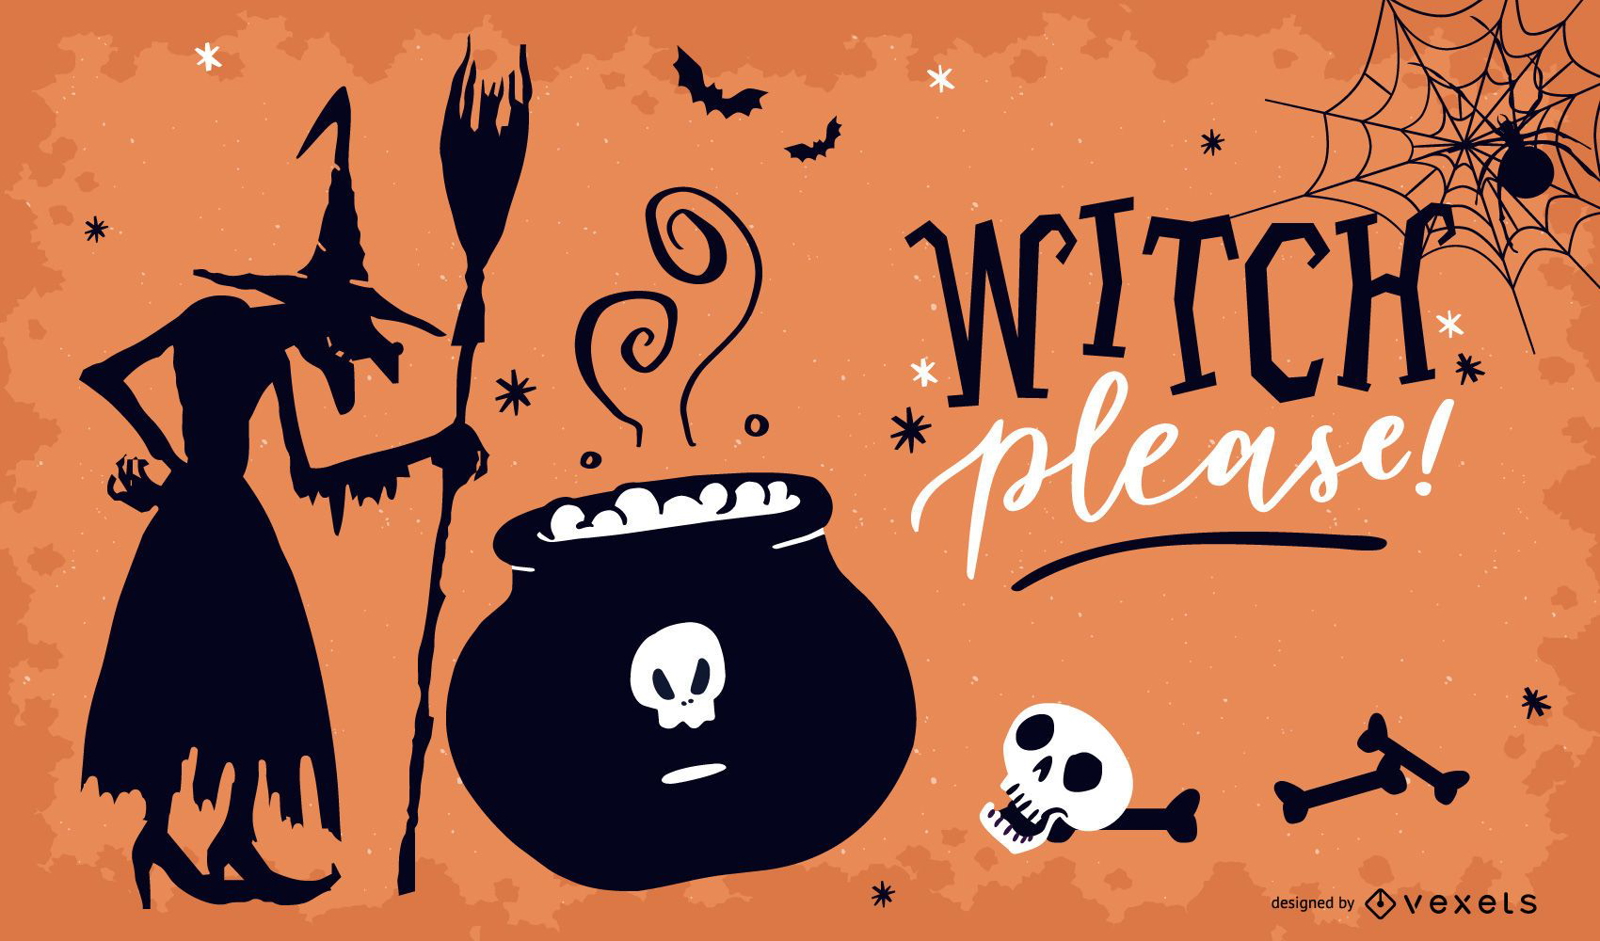 Bruxa, por favor, design de ilustração de Halloween